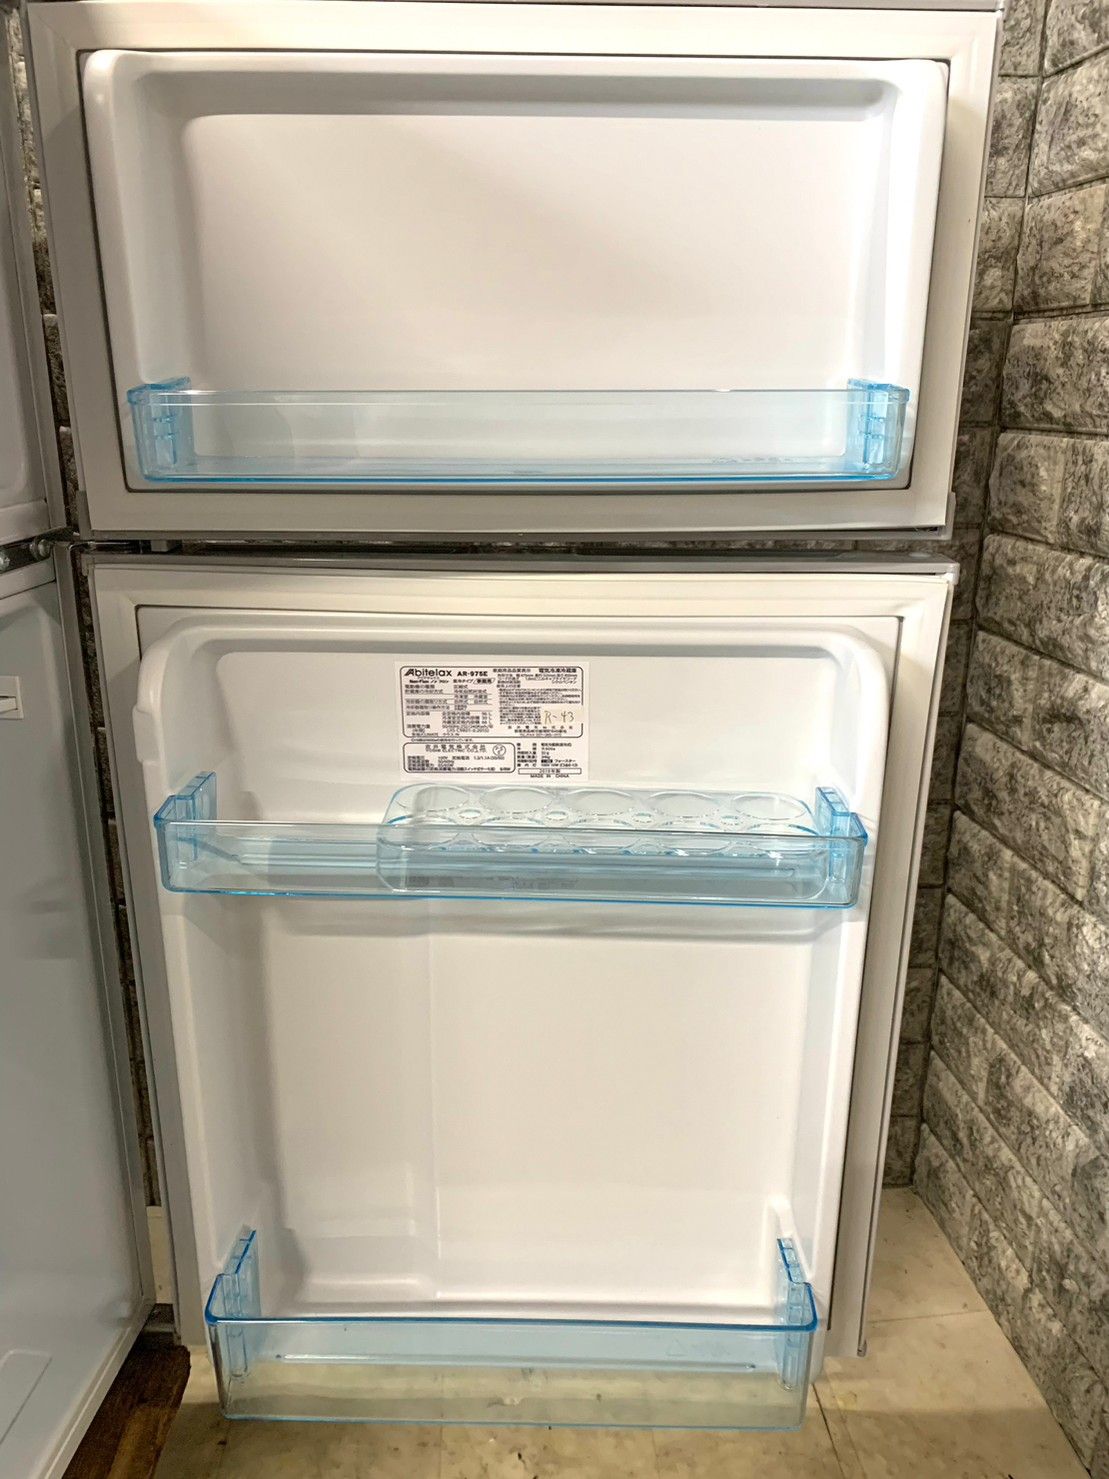 アビテラックス 冷凍冷蔵庫 - キッチン家電